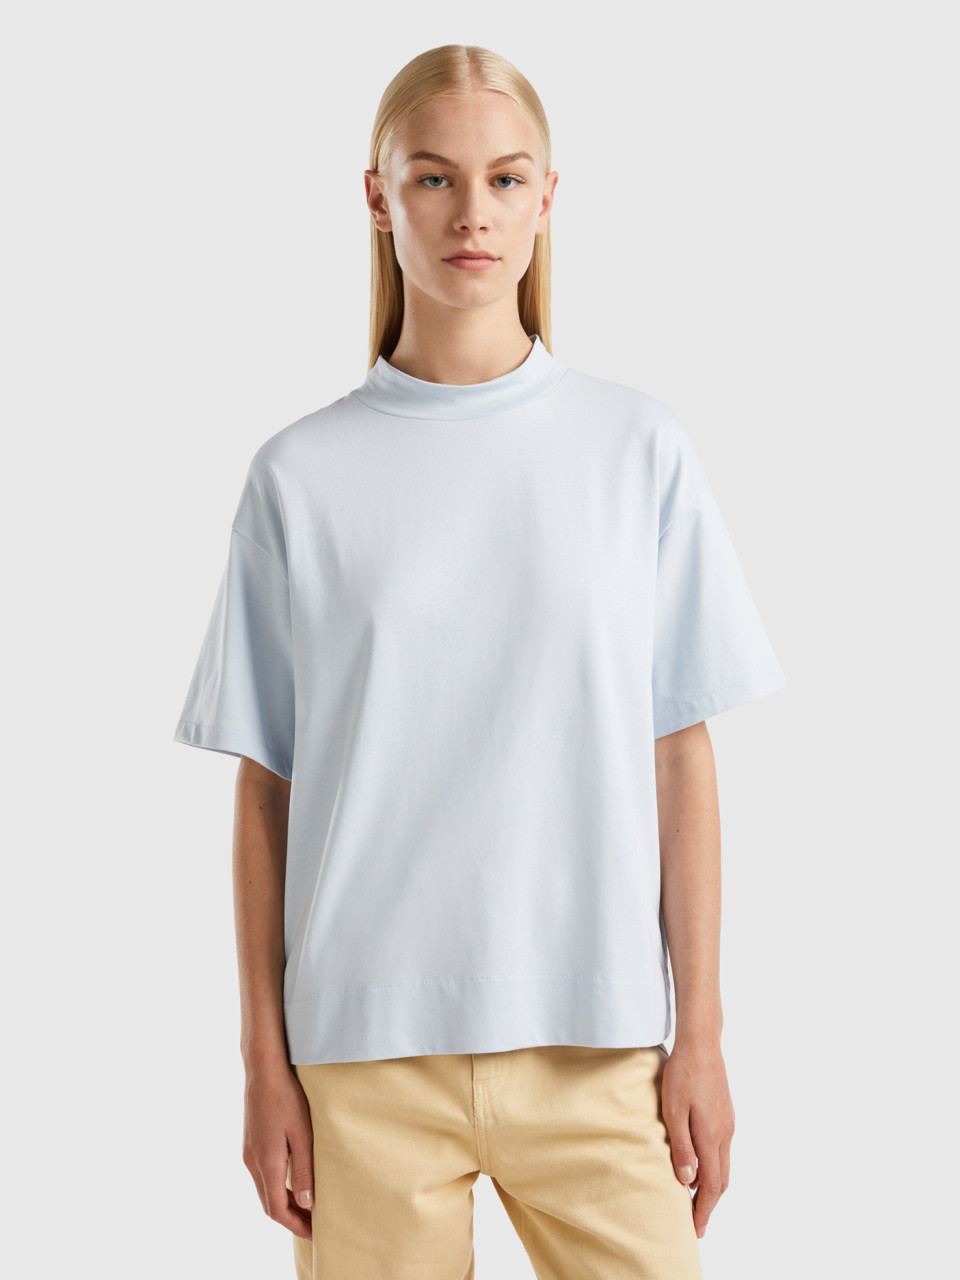 Benetton, T-shirt With Standing Neck, Sky Blue, Women